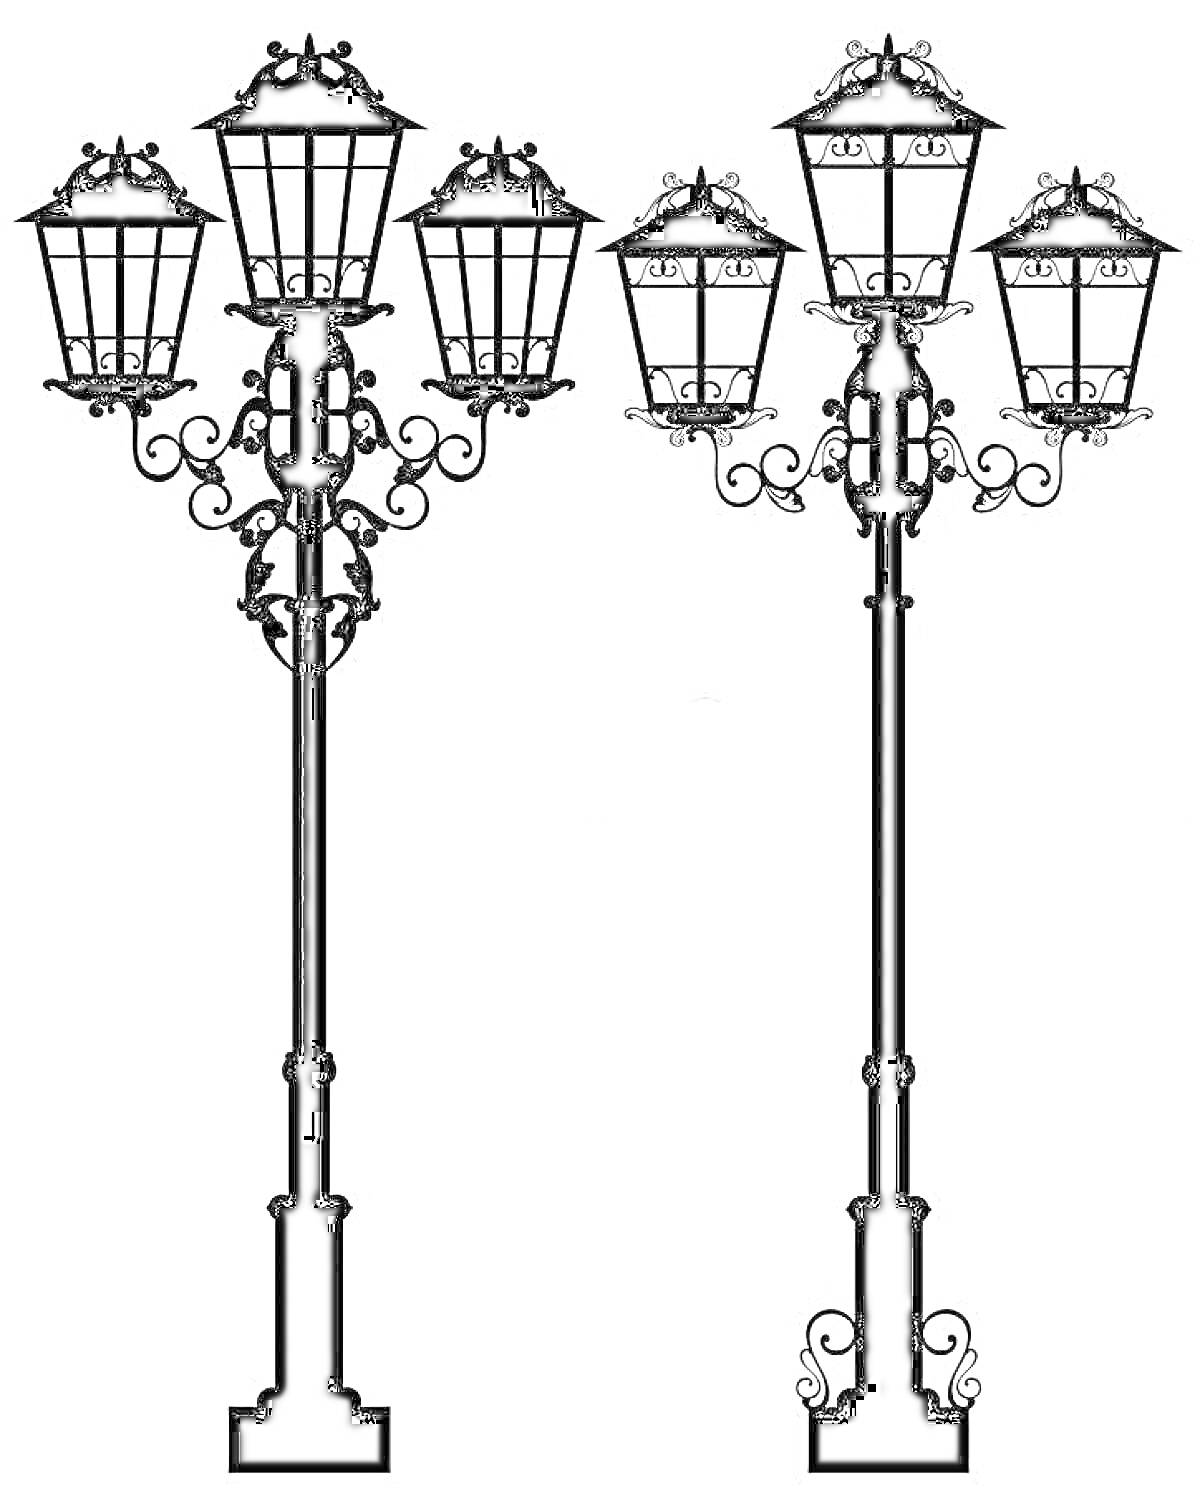 Раскраска Два уличных фонаря с тремя лампами каждый, украшенные декоративными элементами